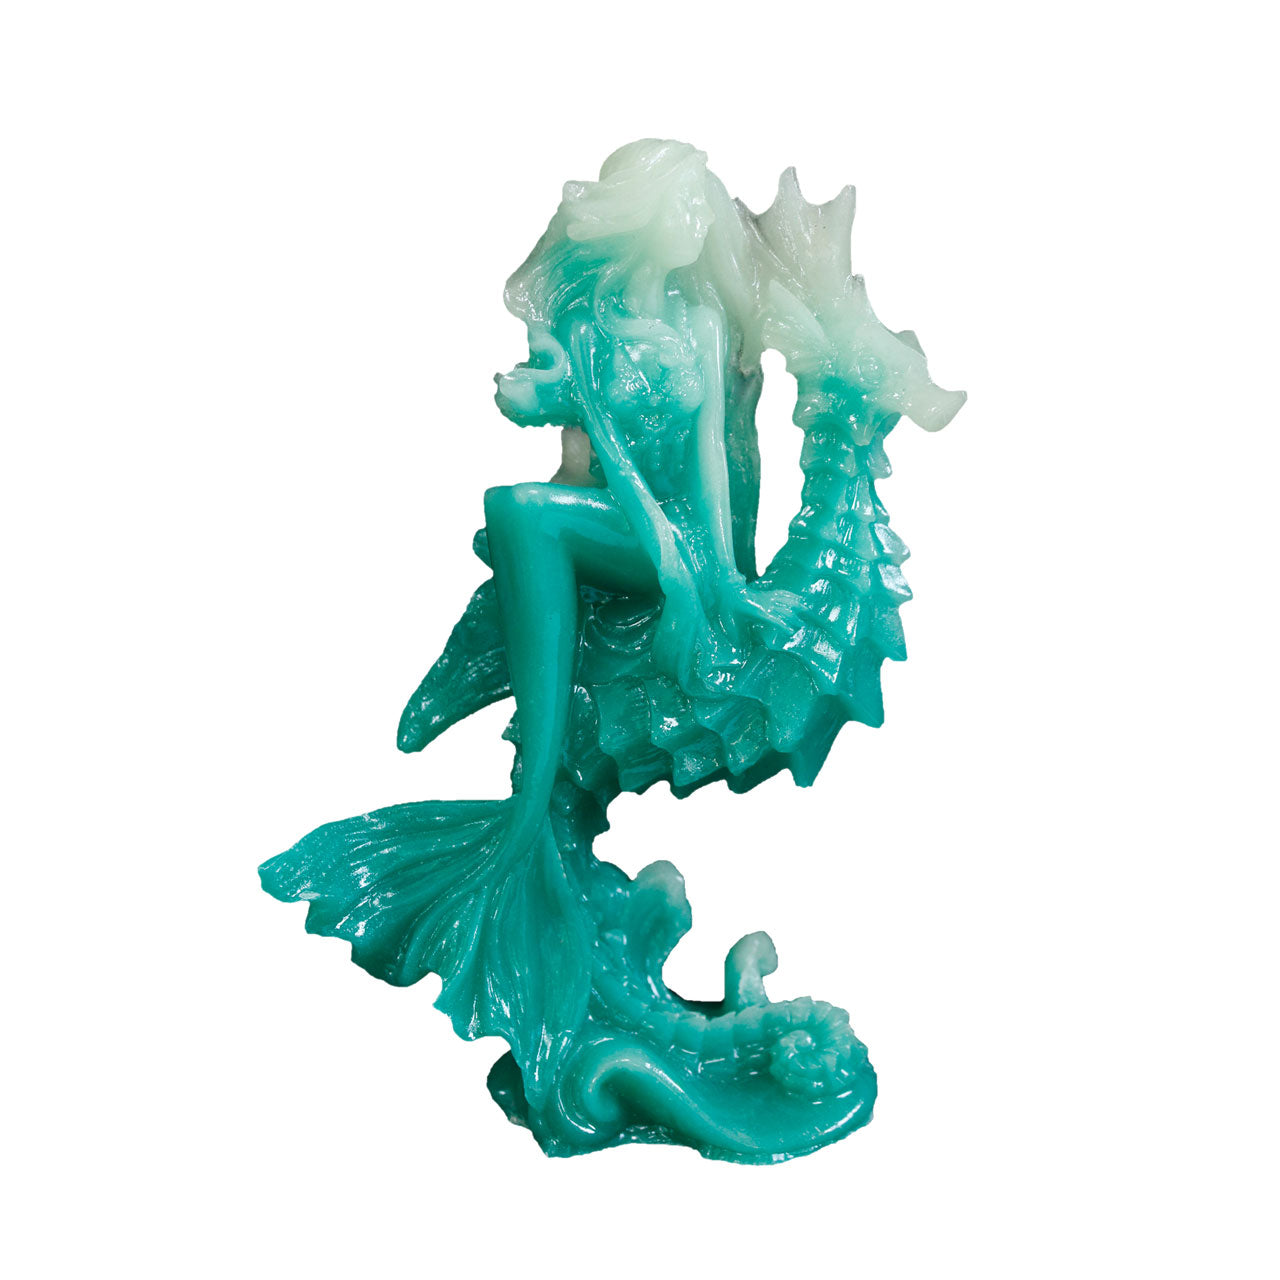 Luminous Sea Horse Mermaid Carving 13.5 CM